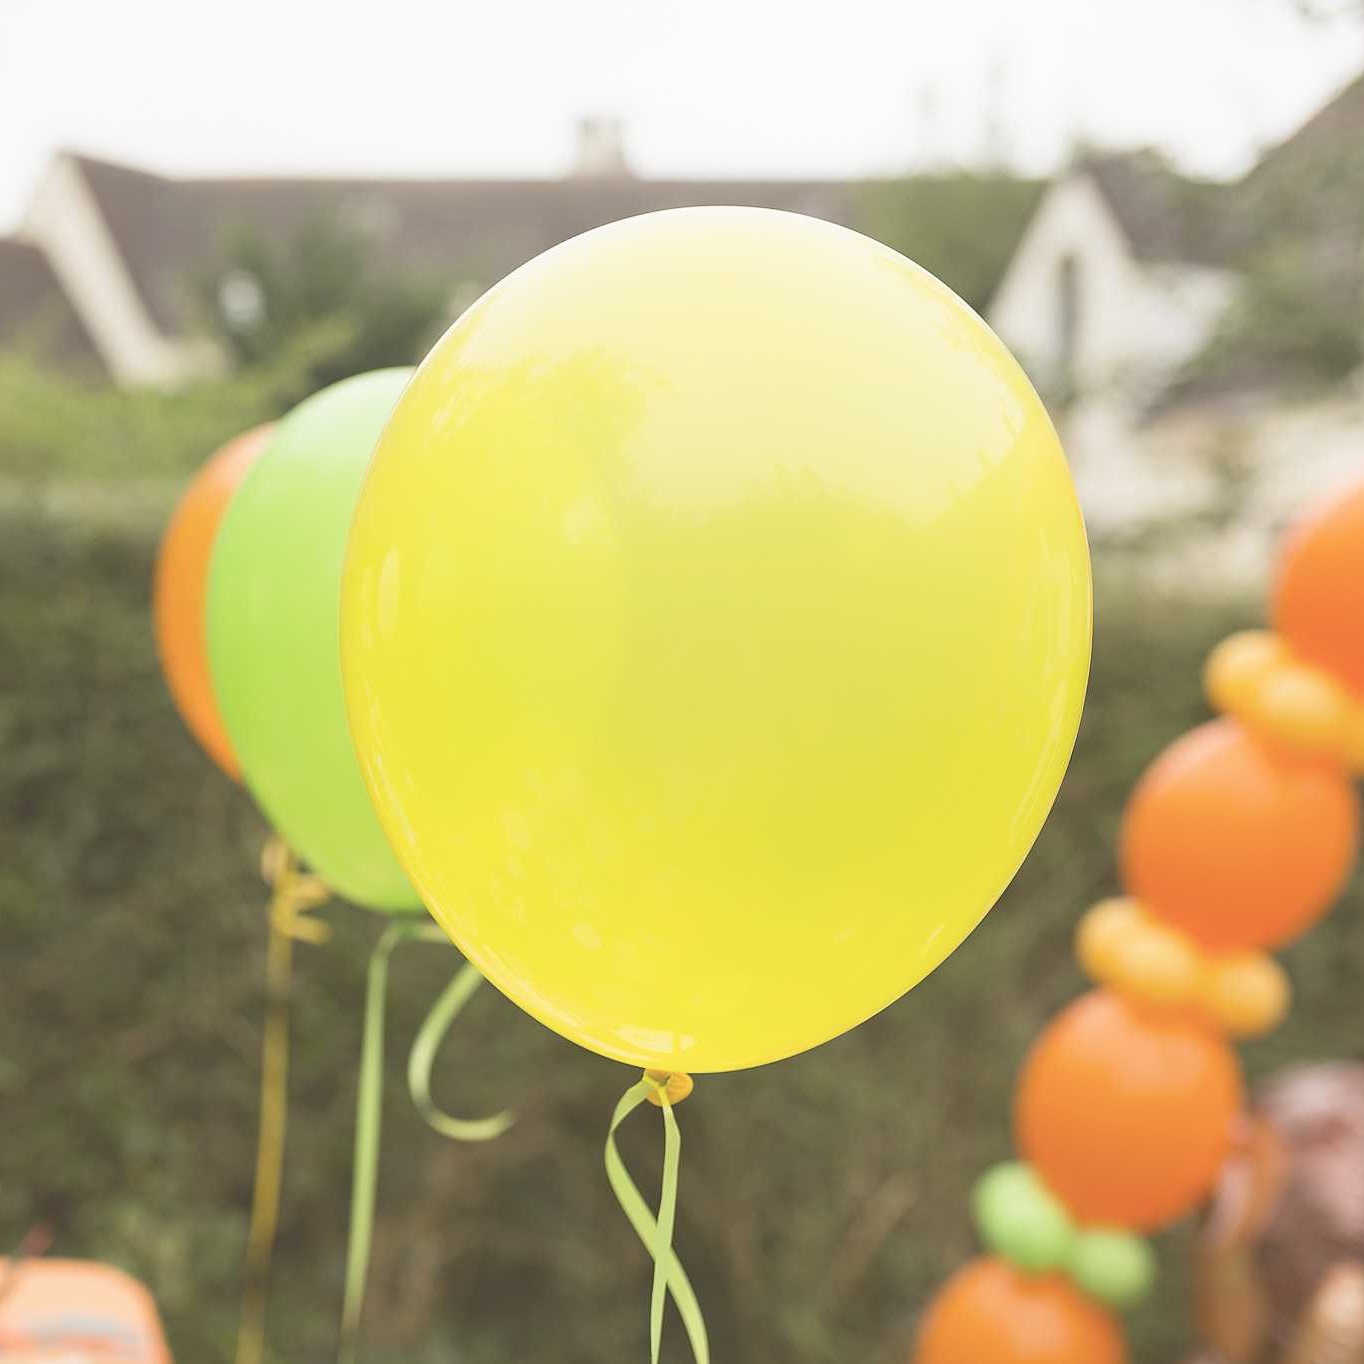 2 ans ballon anniversaire, ballon chiffre 2, vert helium géants balloons,  ballon decoration anniversaire pour enfants filles garçons